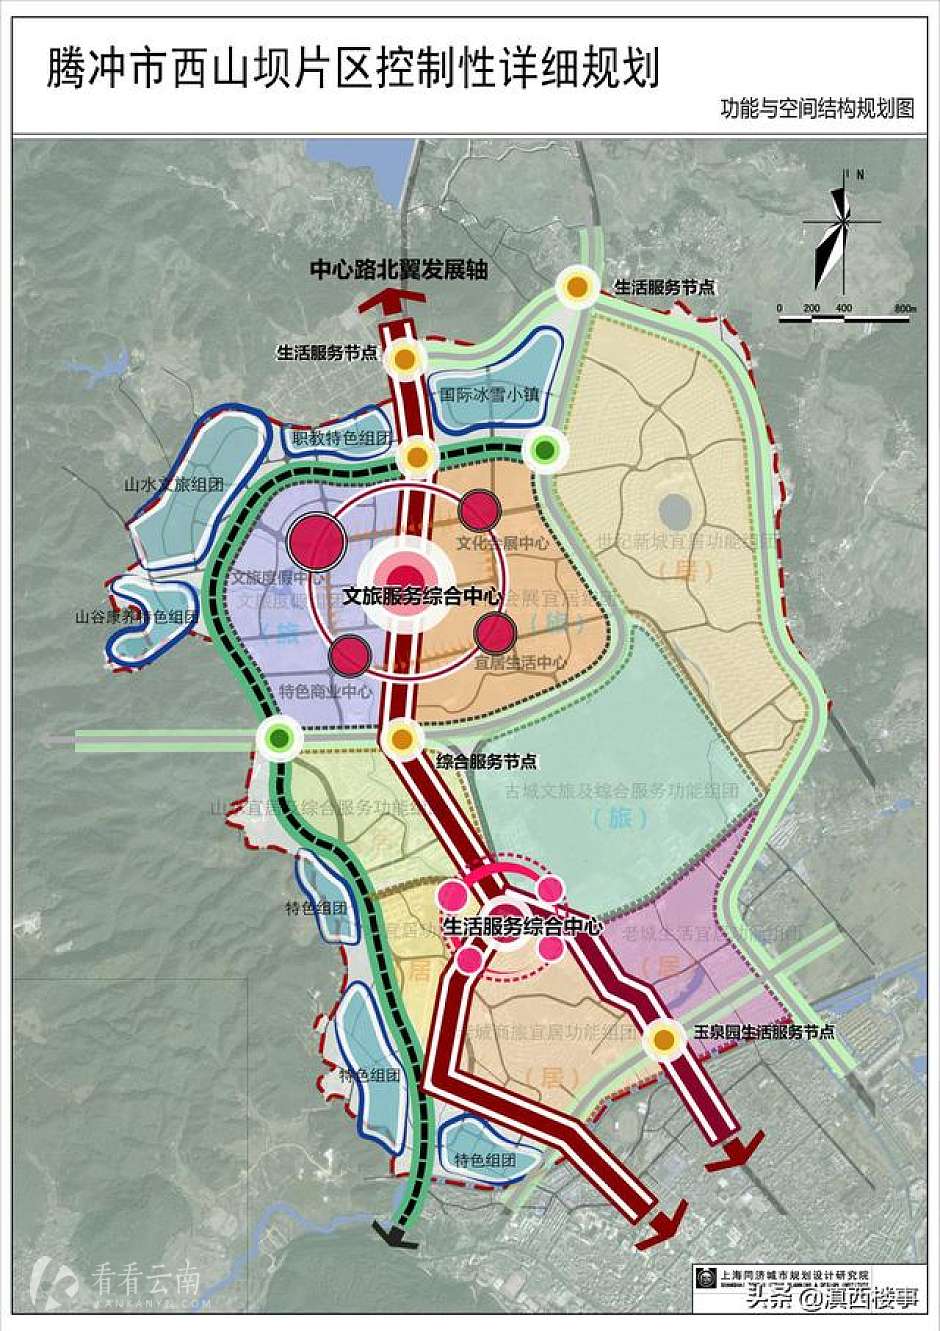 腾冲市西山坝区之功能与空间结构规划图